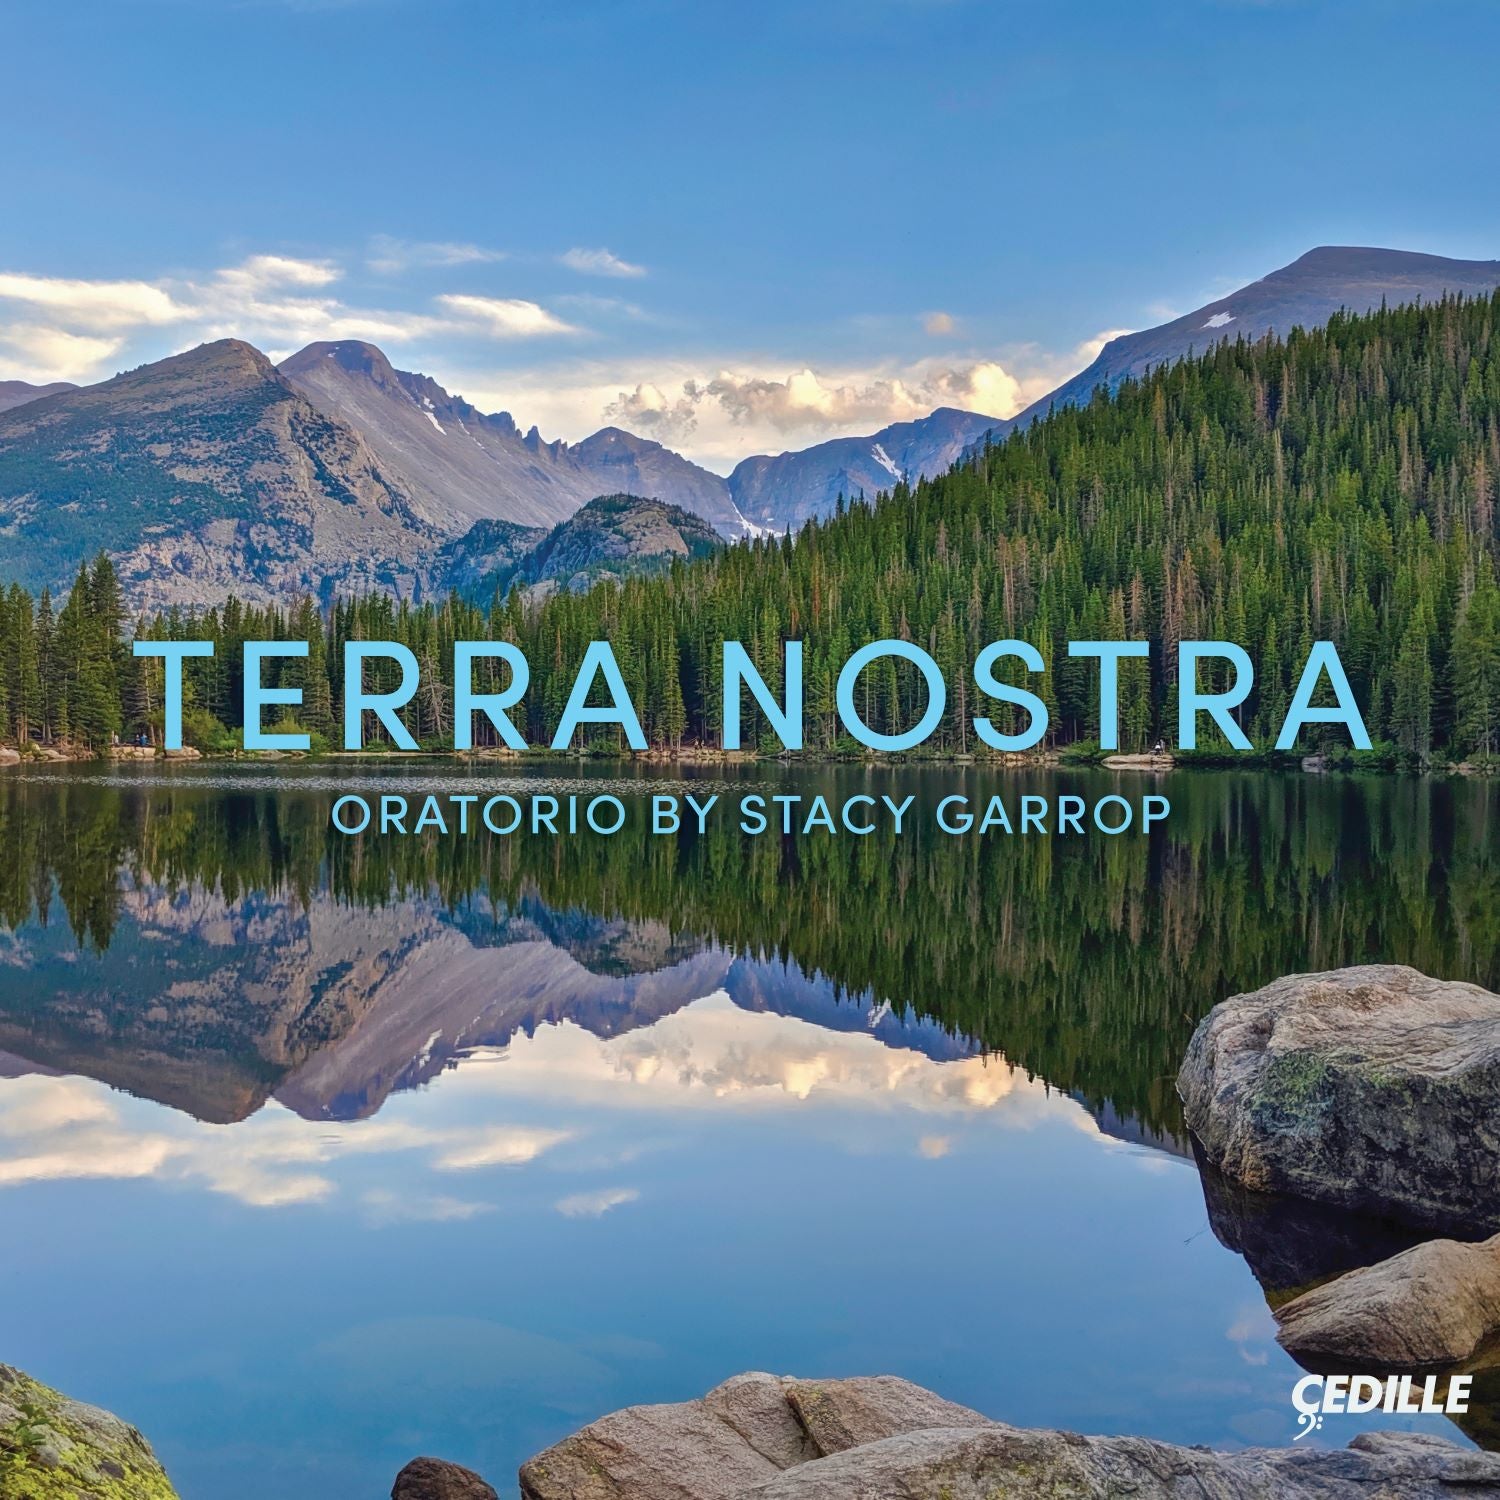 Garrop: Terra Nostra / Alltop, Uniting Voices, Northwestern University Choir & Orchestra